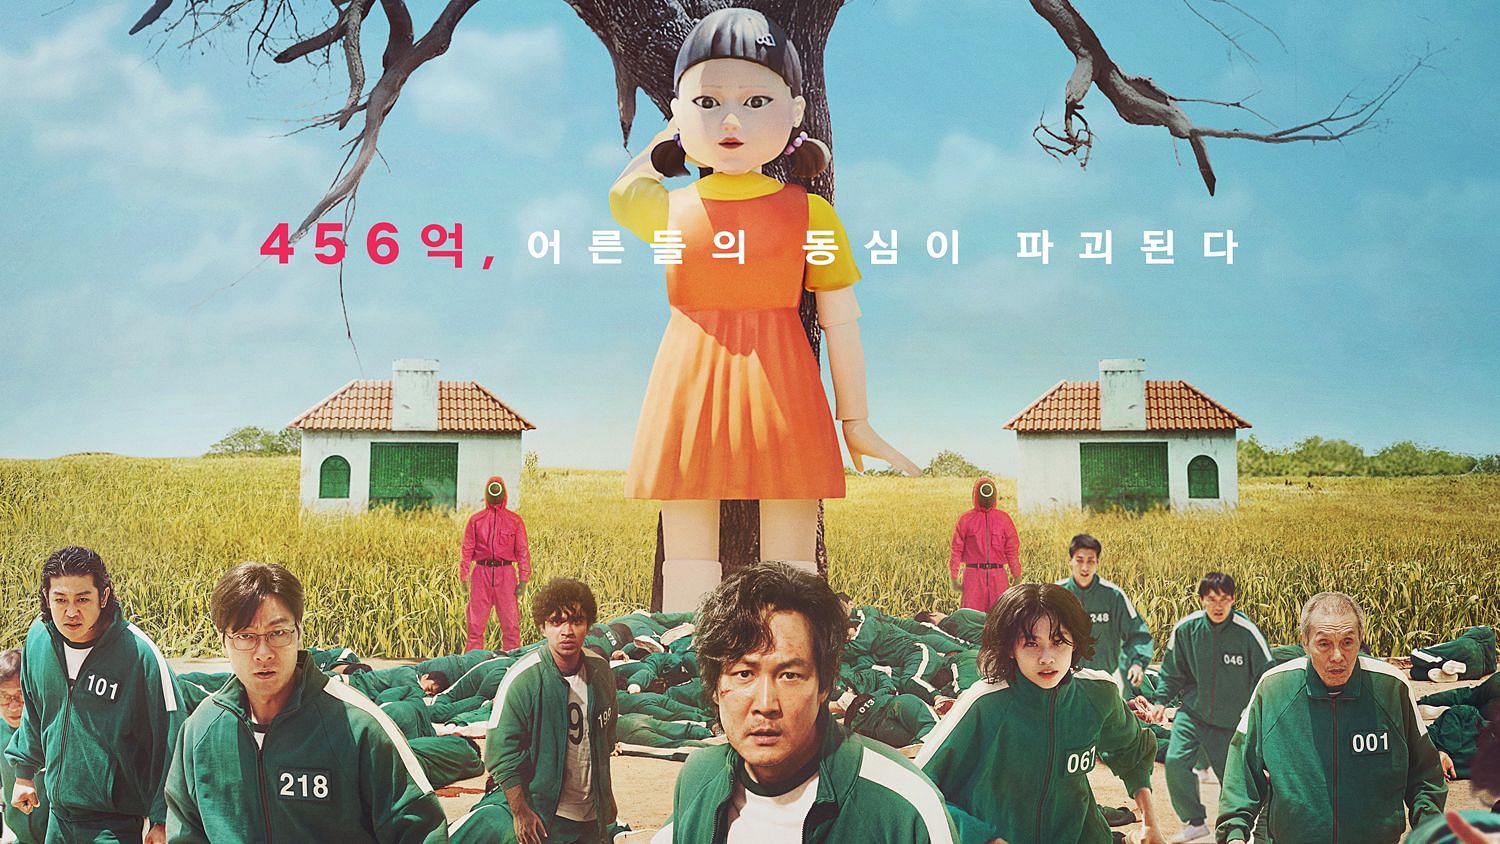 <div class="paragraphs"><p>The poster for the hit Korean Netflix show&nbsp;<em>Squid Game.</em></p></div>